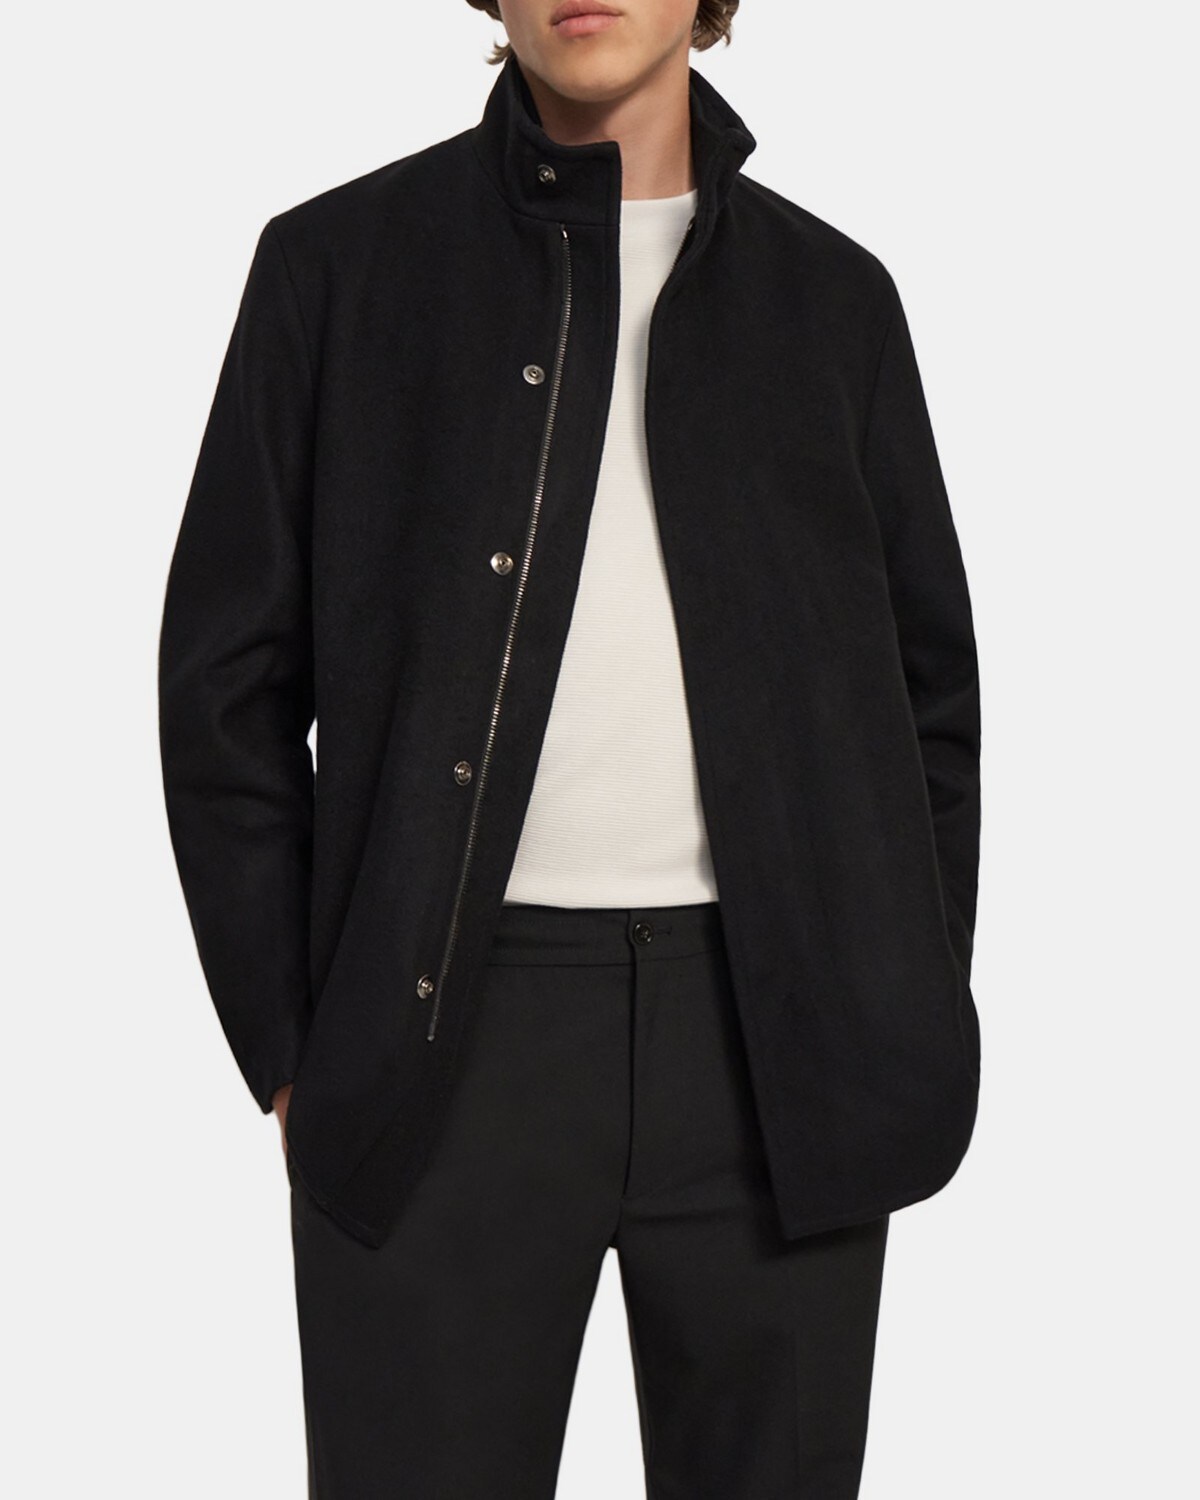 띠어리 맨 재킷 Theory Stand-Collar Jacket in Stretch Melton Wool,BLACK